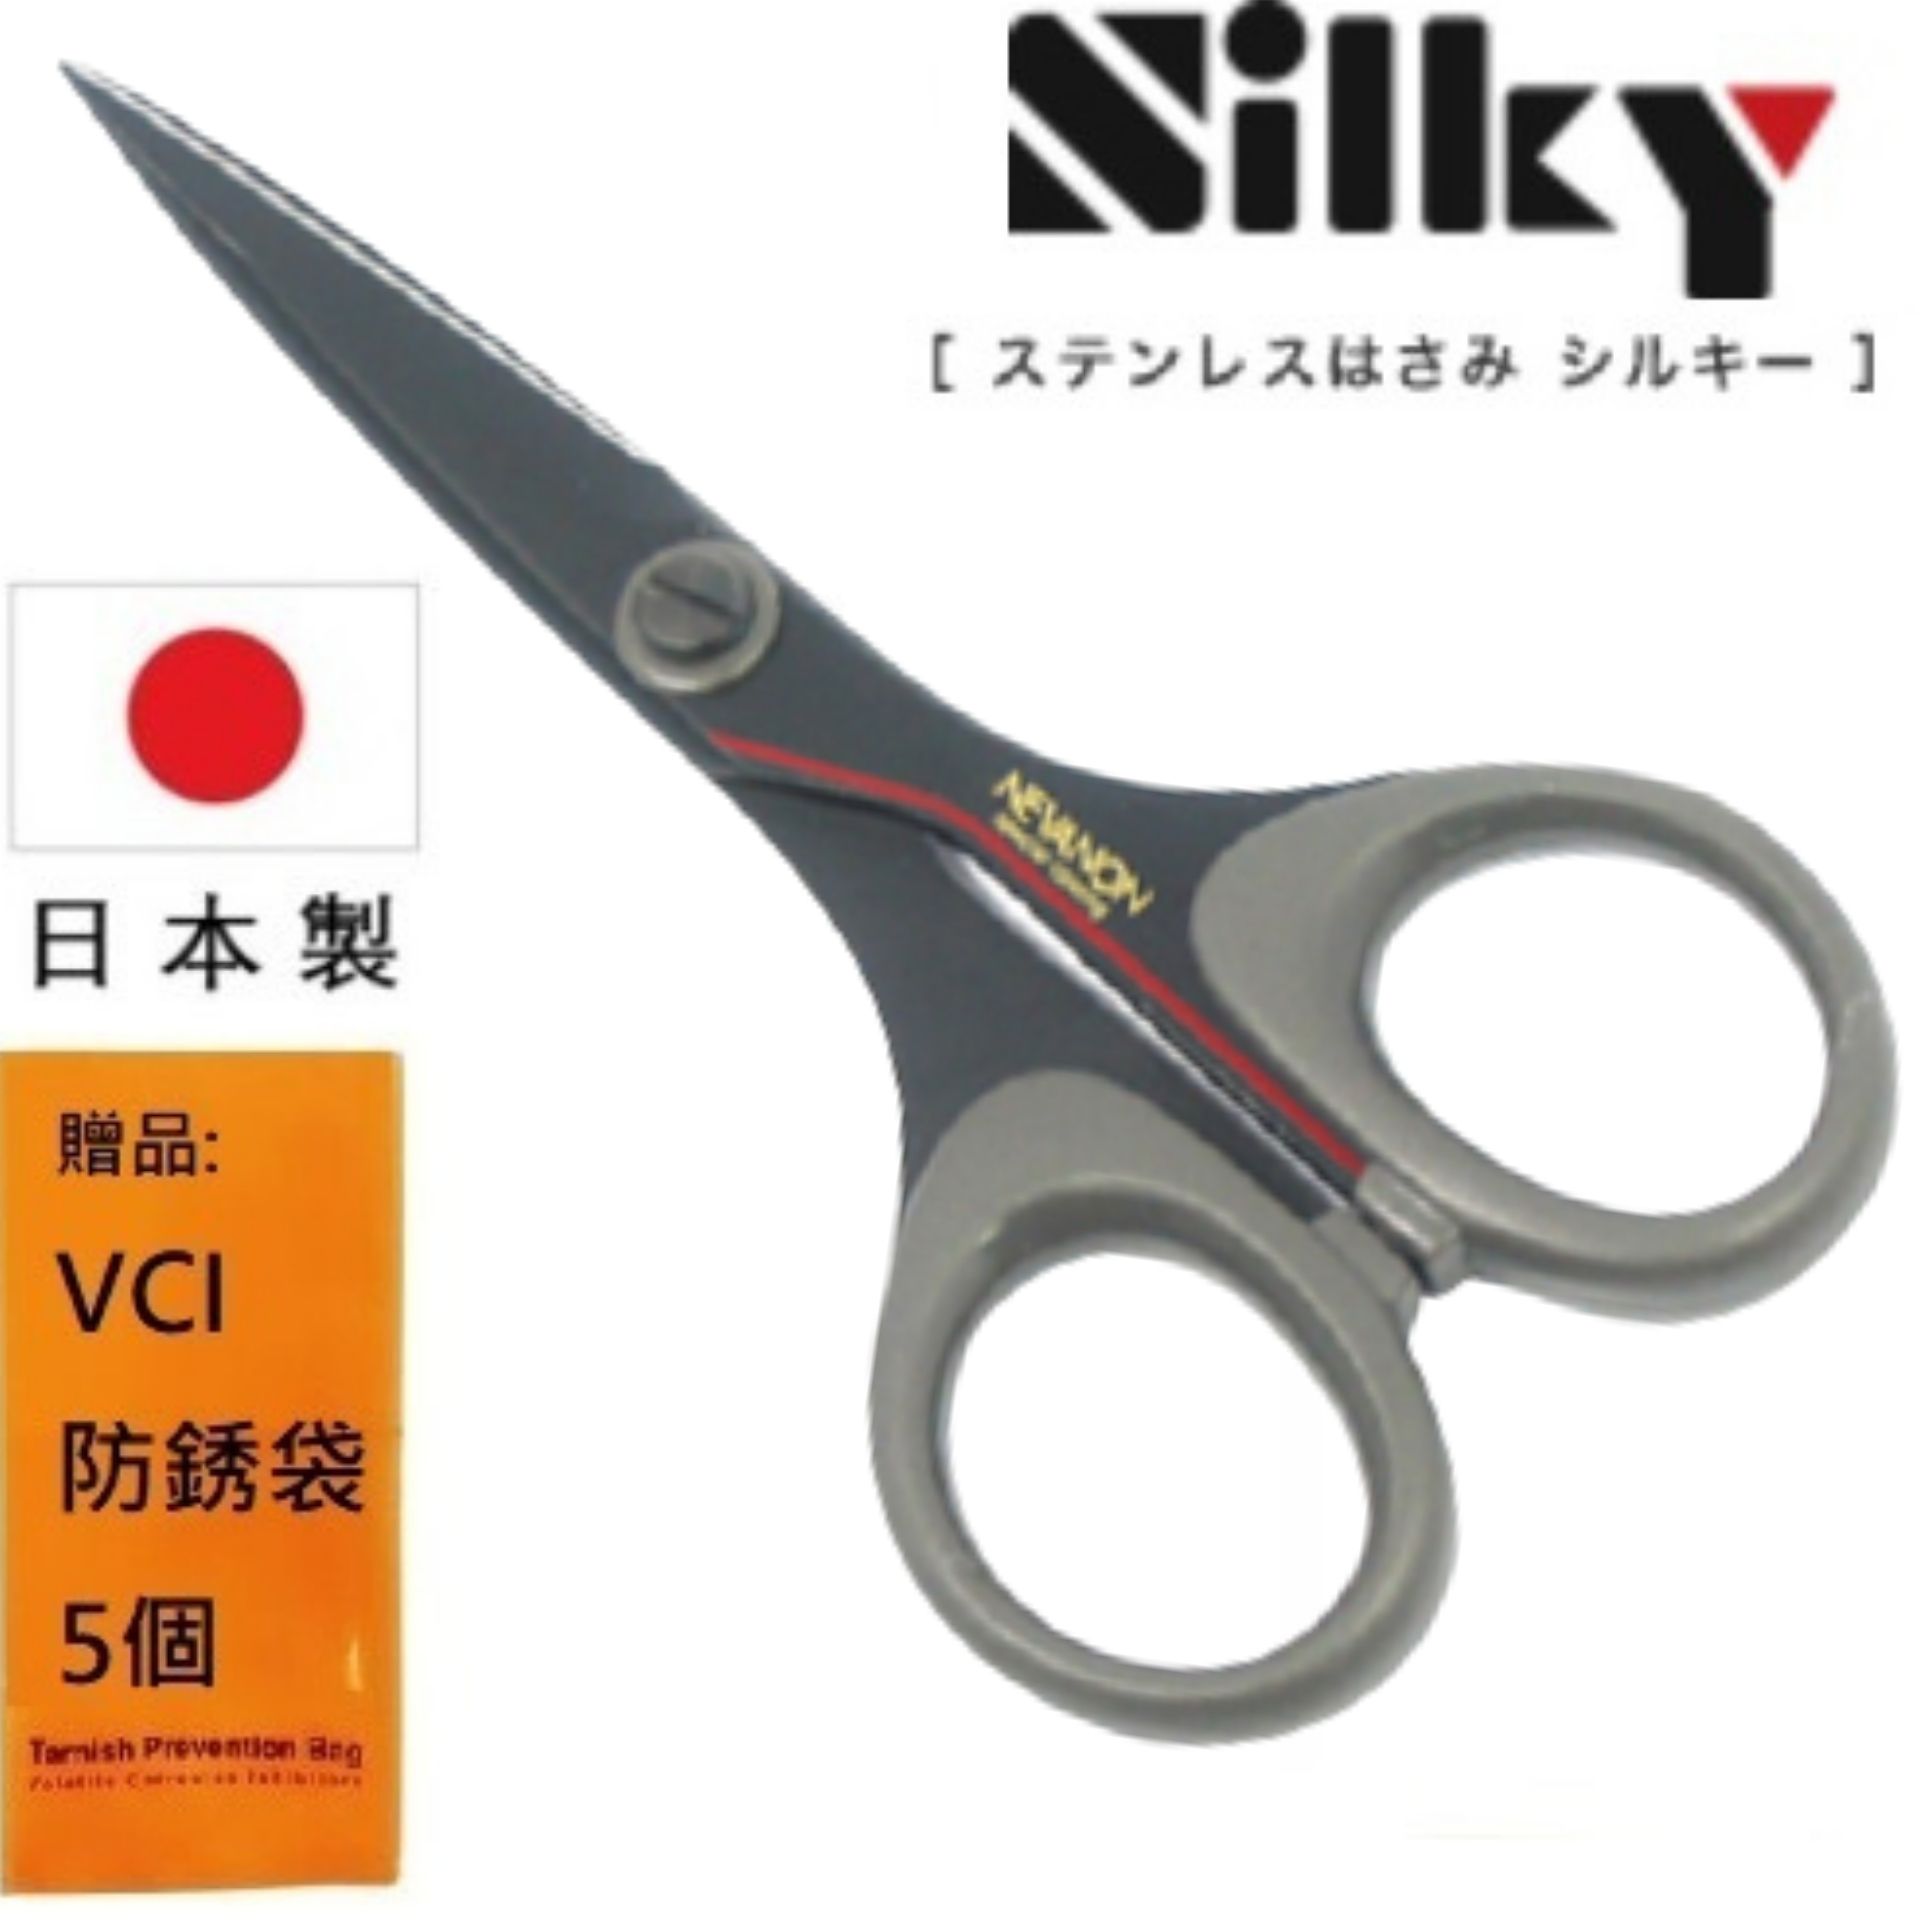 【日本SILKY】黑刃超不粘膠剪刀-工藝剪-135mm 高強度使用性、高度耐損機械性能